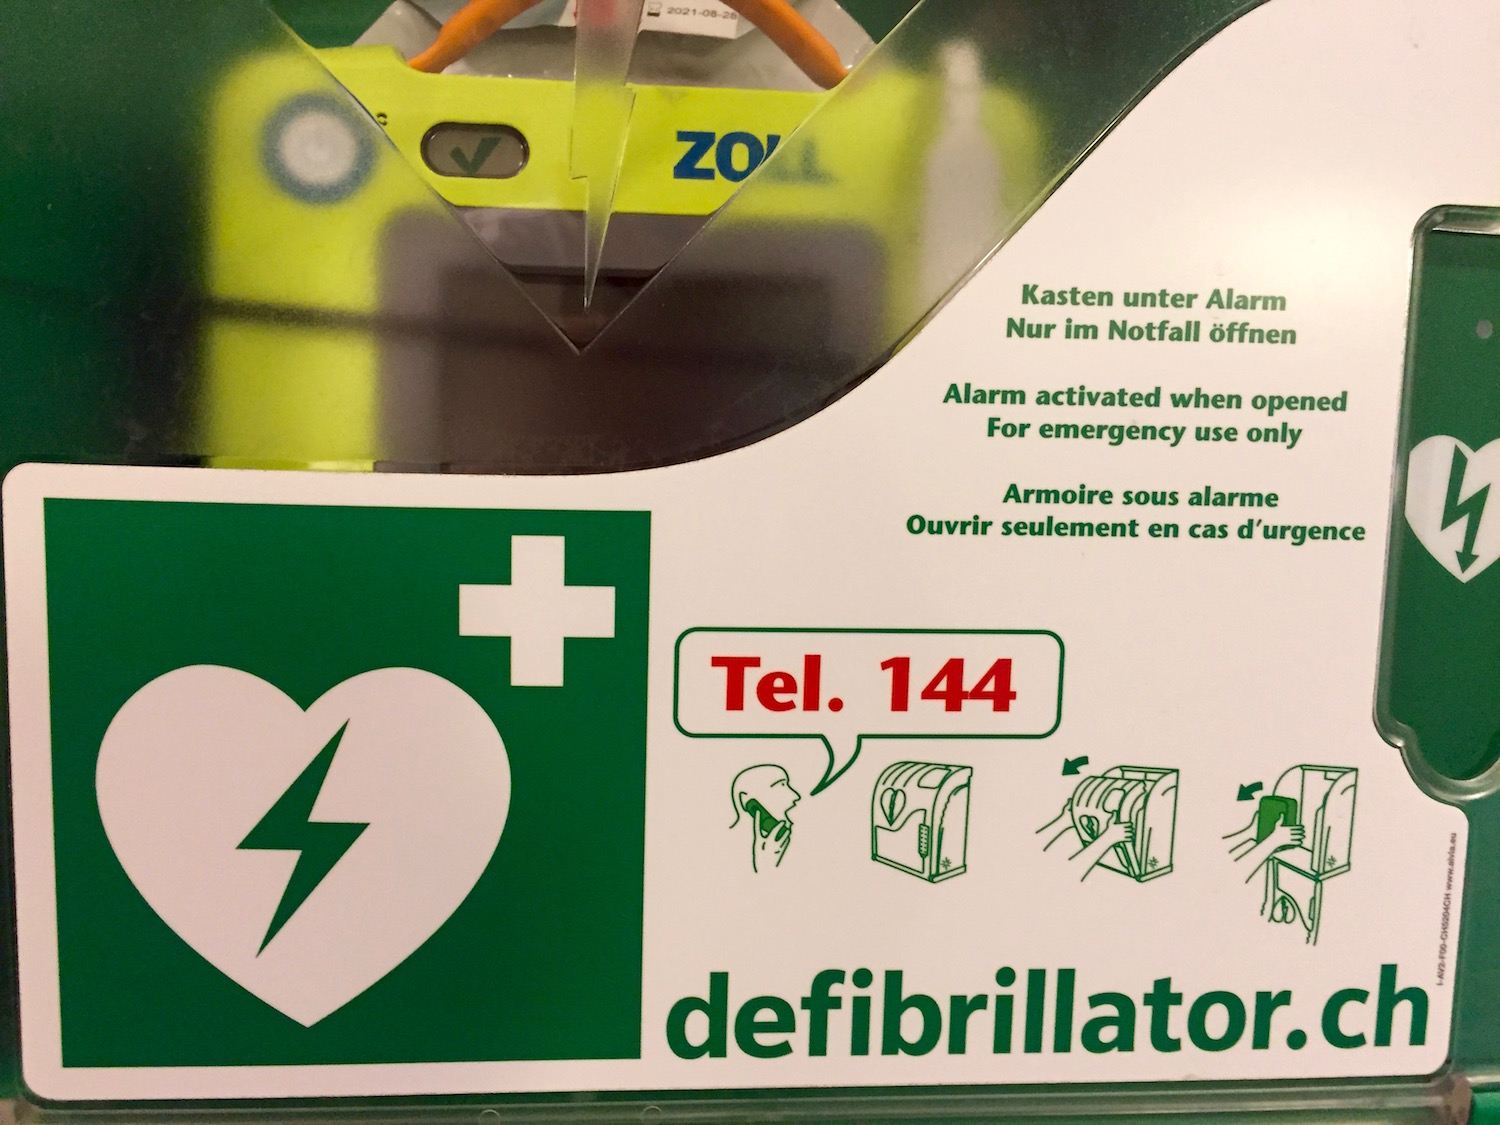 Wird der Defibrillator entwendet, wird automatisch ein Notruf ausgelöst. 